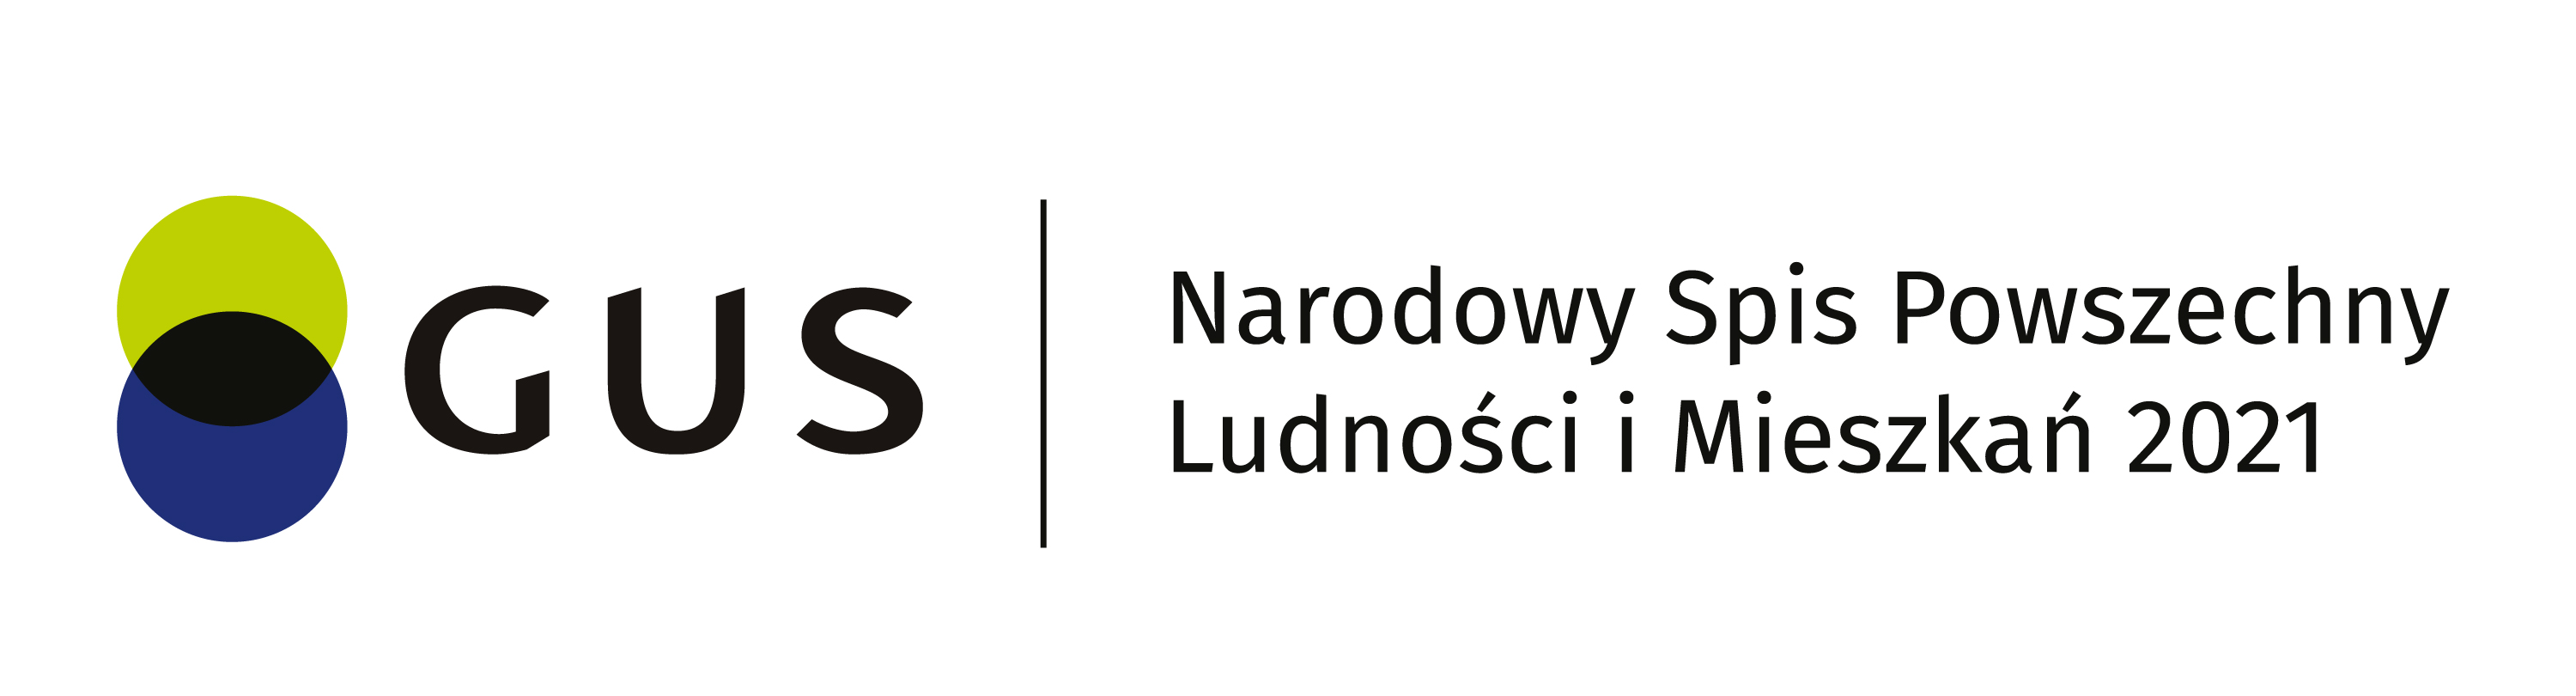 logo NSP